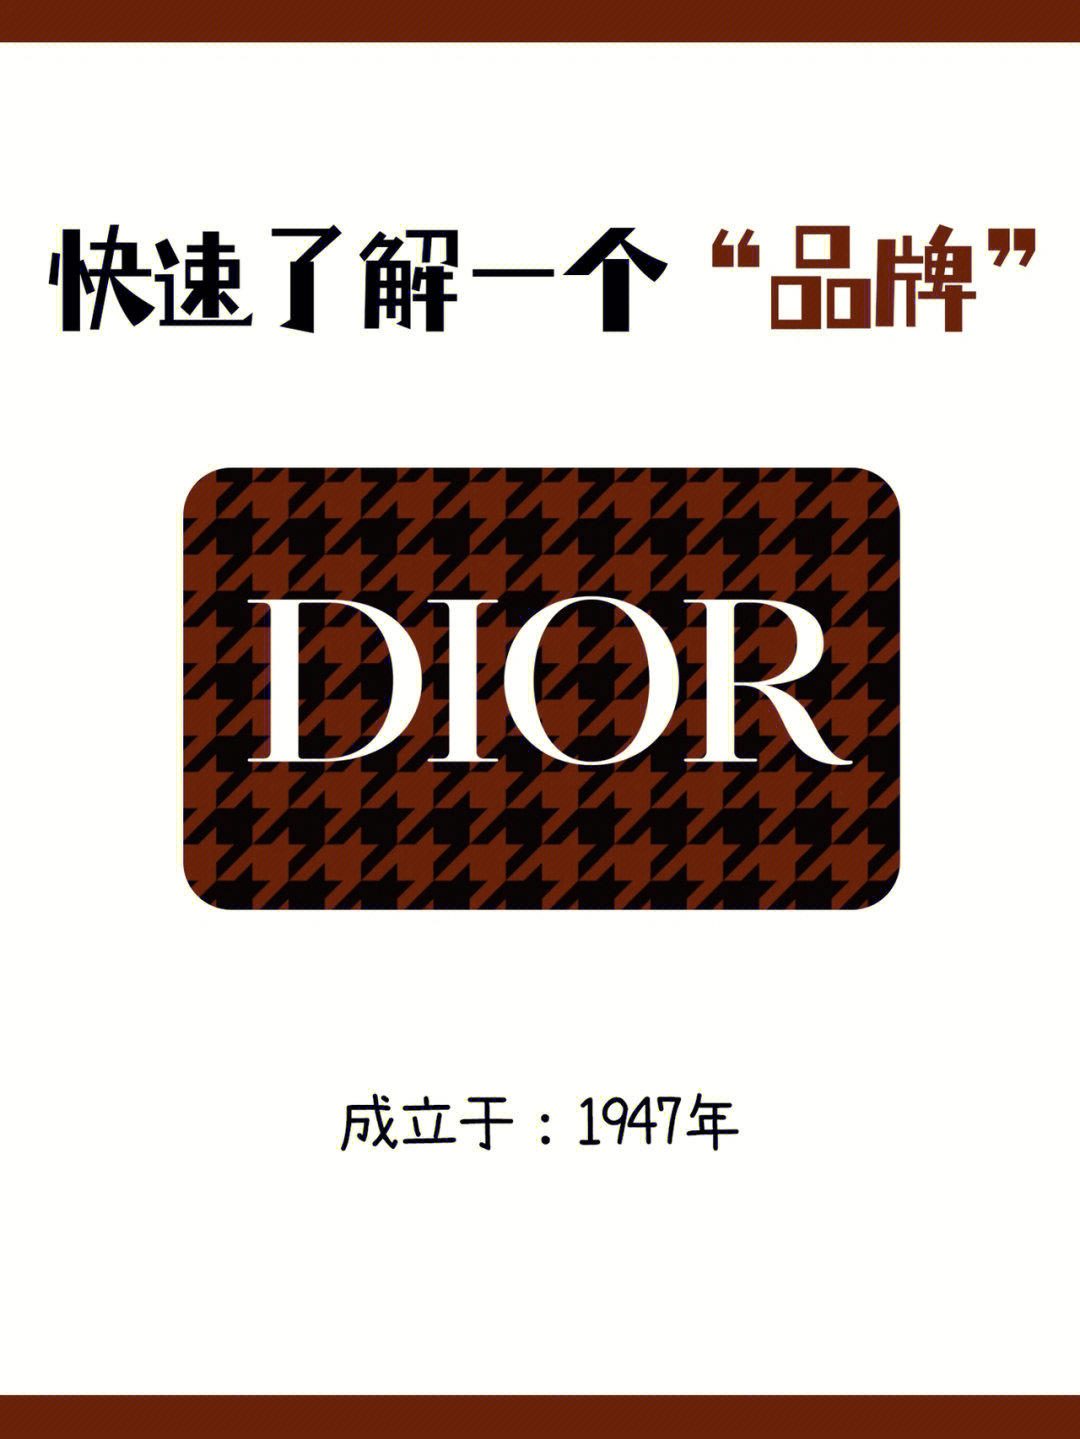 迪奥标志logo有几种图片